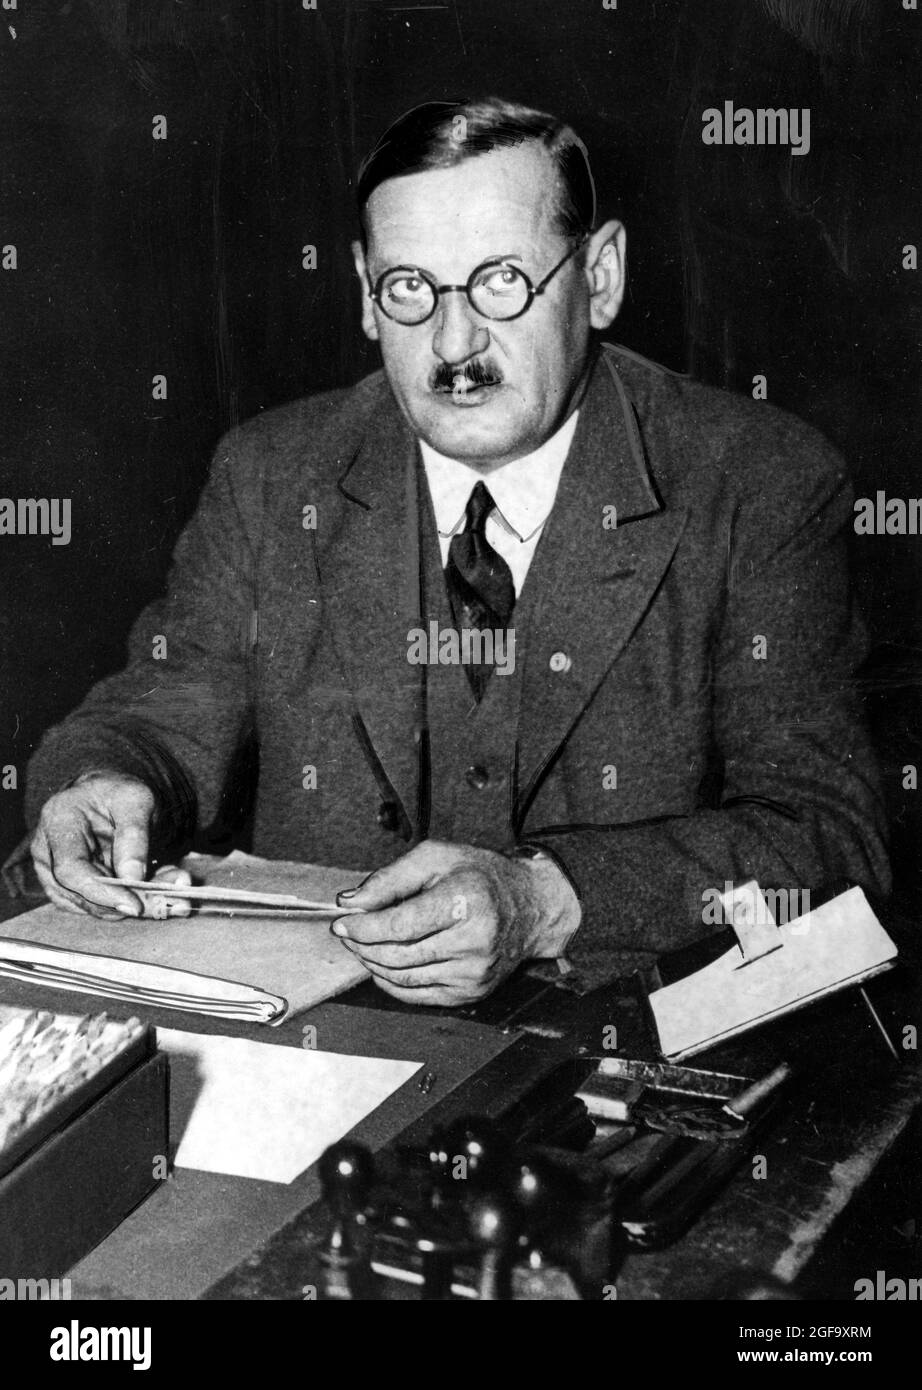 Anton Drexler, der rechte Idealog und Gründer der DAP (Deutsche Arbeiterpartei), die dann zur NSDAP wurde), der nazi-Partei. Er war ein Freund und Mentor Hitlers und ist einer der wichtigsten Architekten des nationalsozialismus. Stockfoto